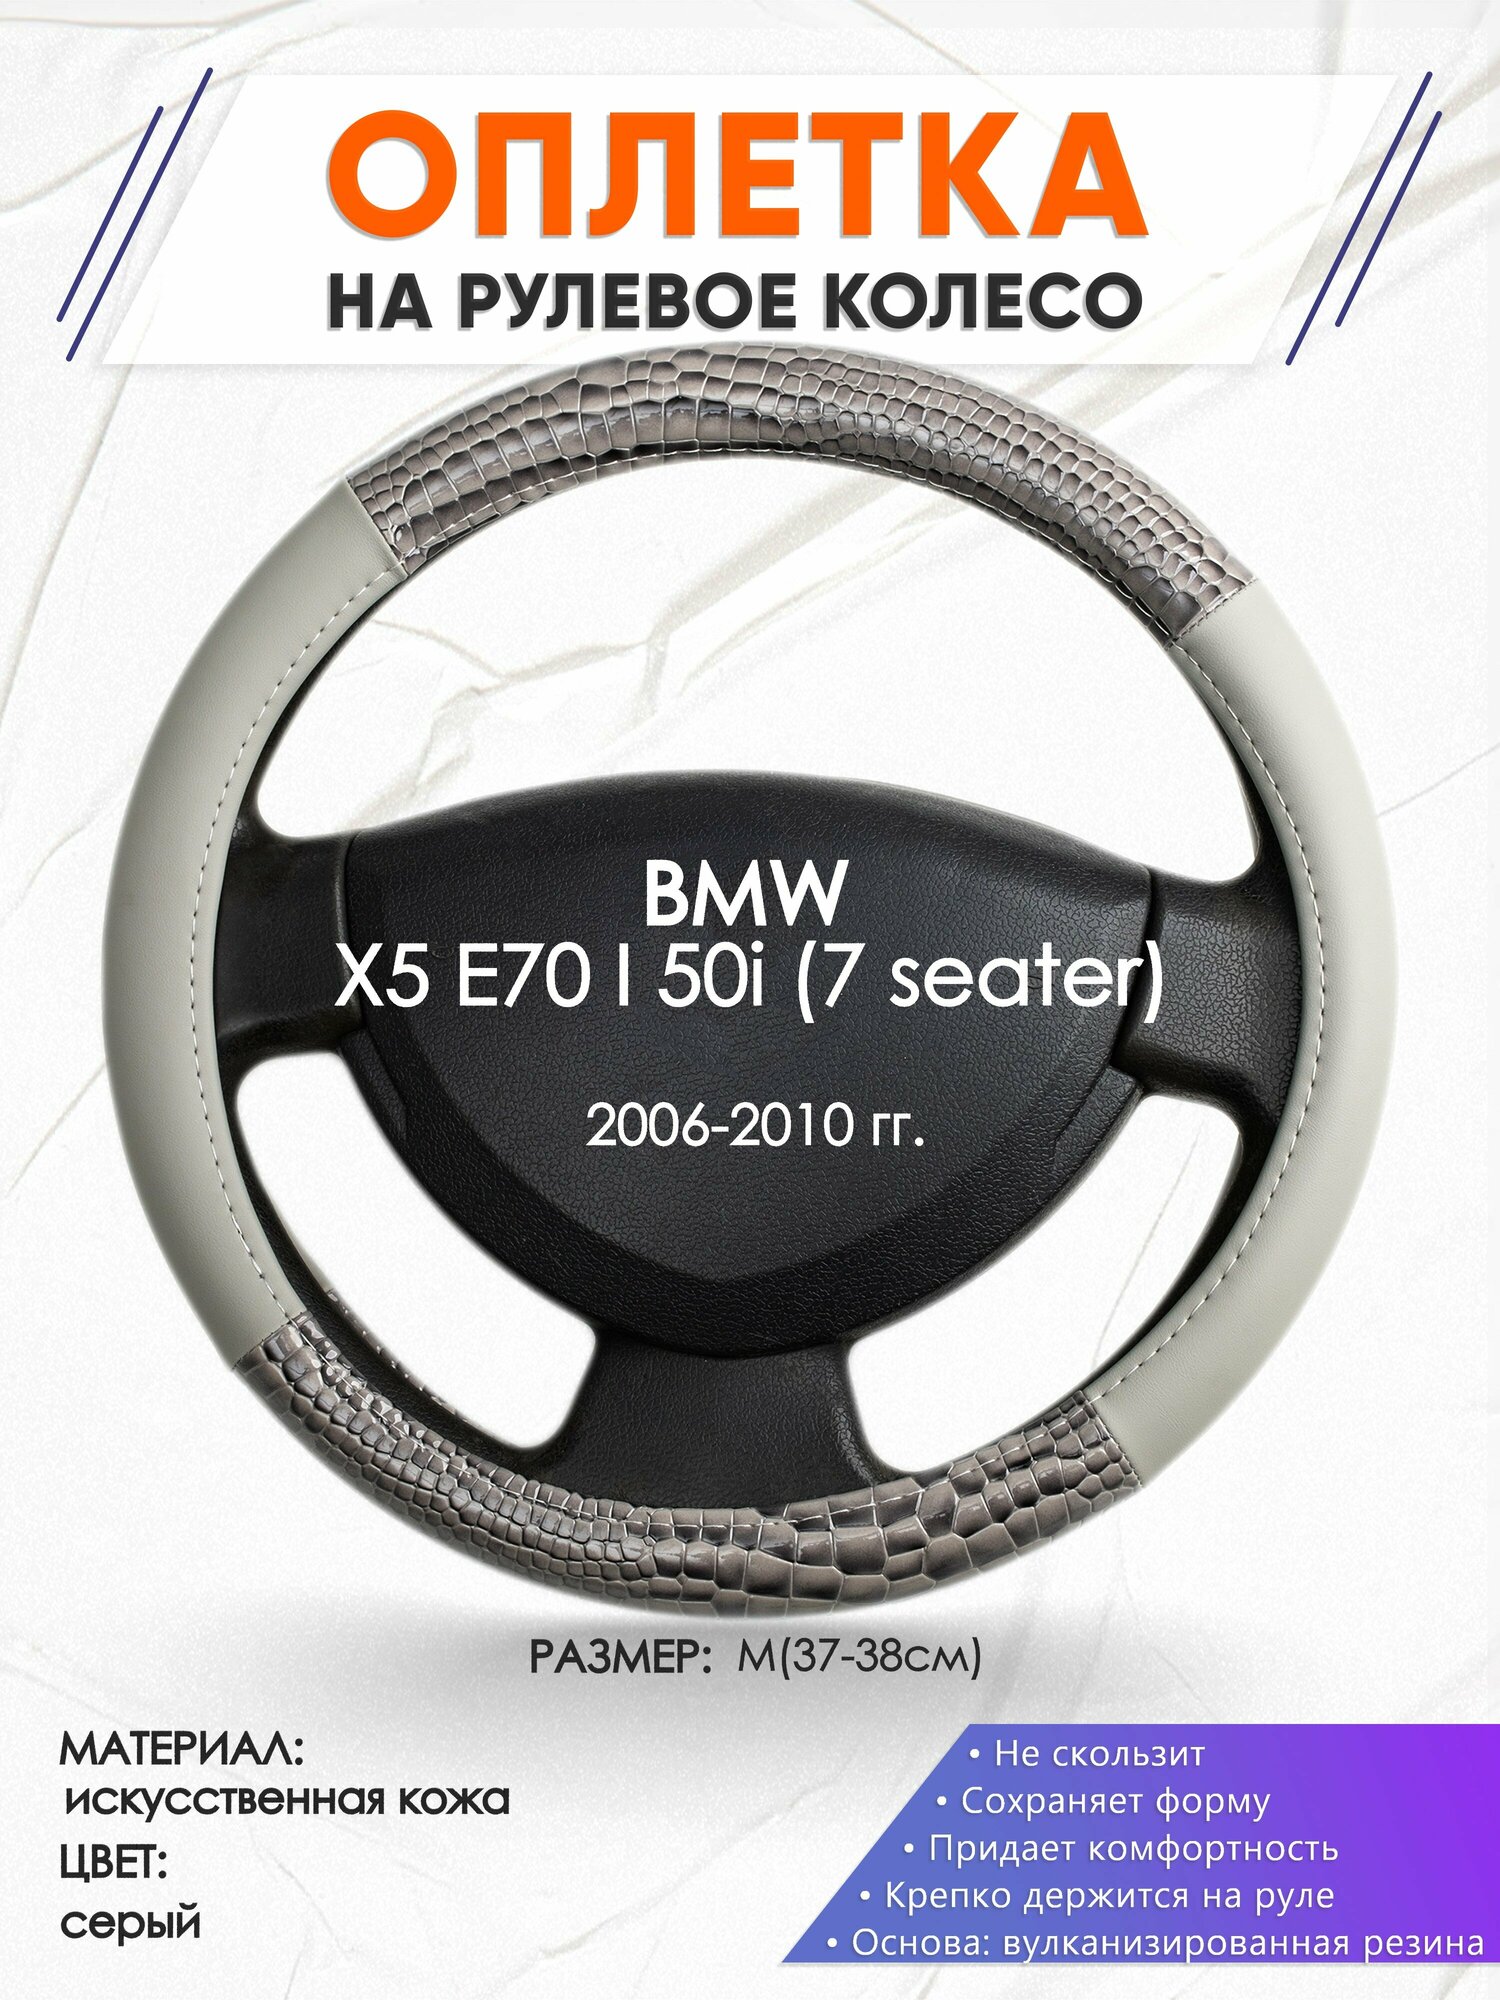 Оплетка наруль для BMW X5 E70 I 50i (7 seater)(Бмв икс 5 е70) 2006-2010 годов выпуска, размер M(37-38см), Искусственная кожа 84